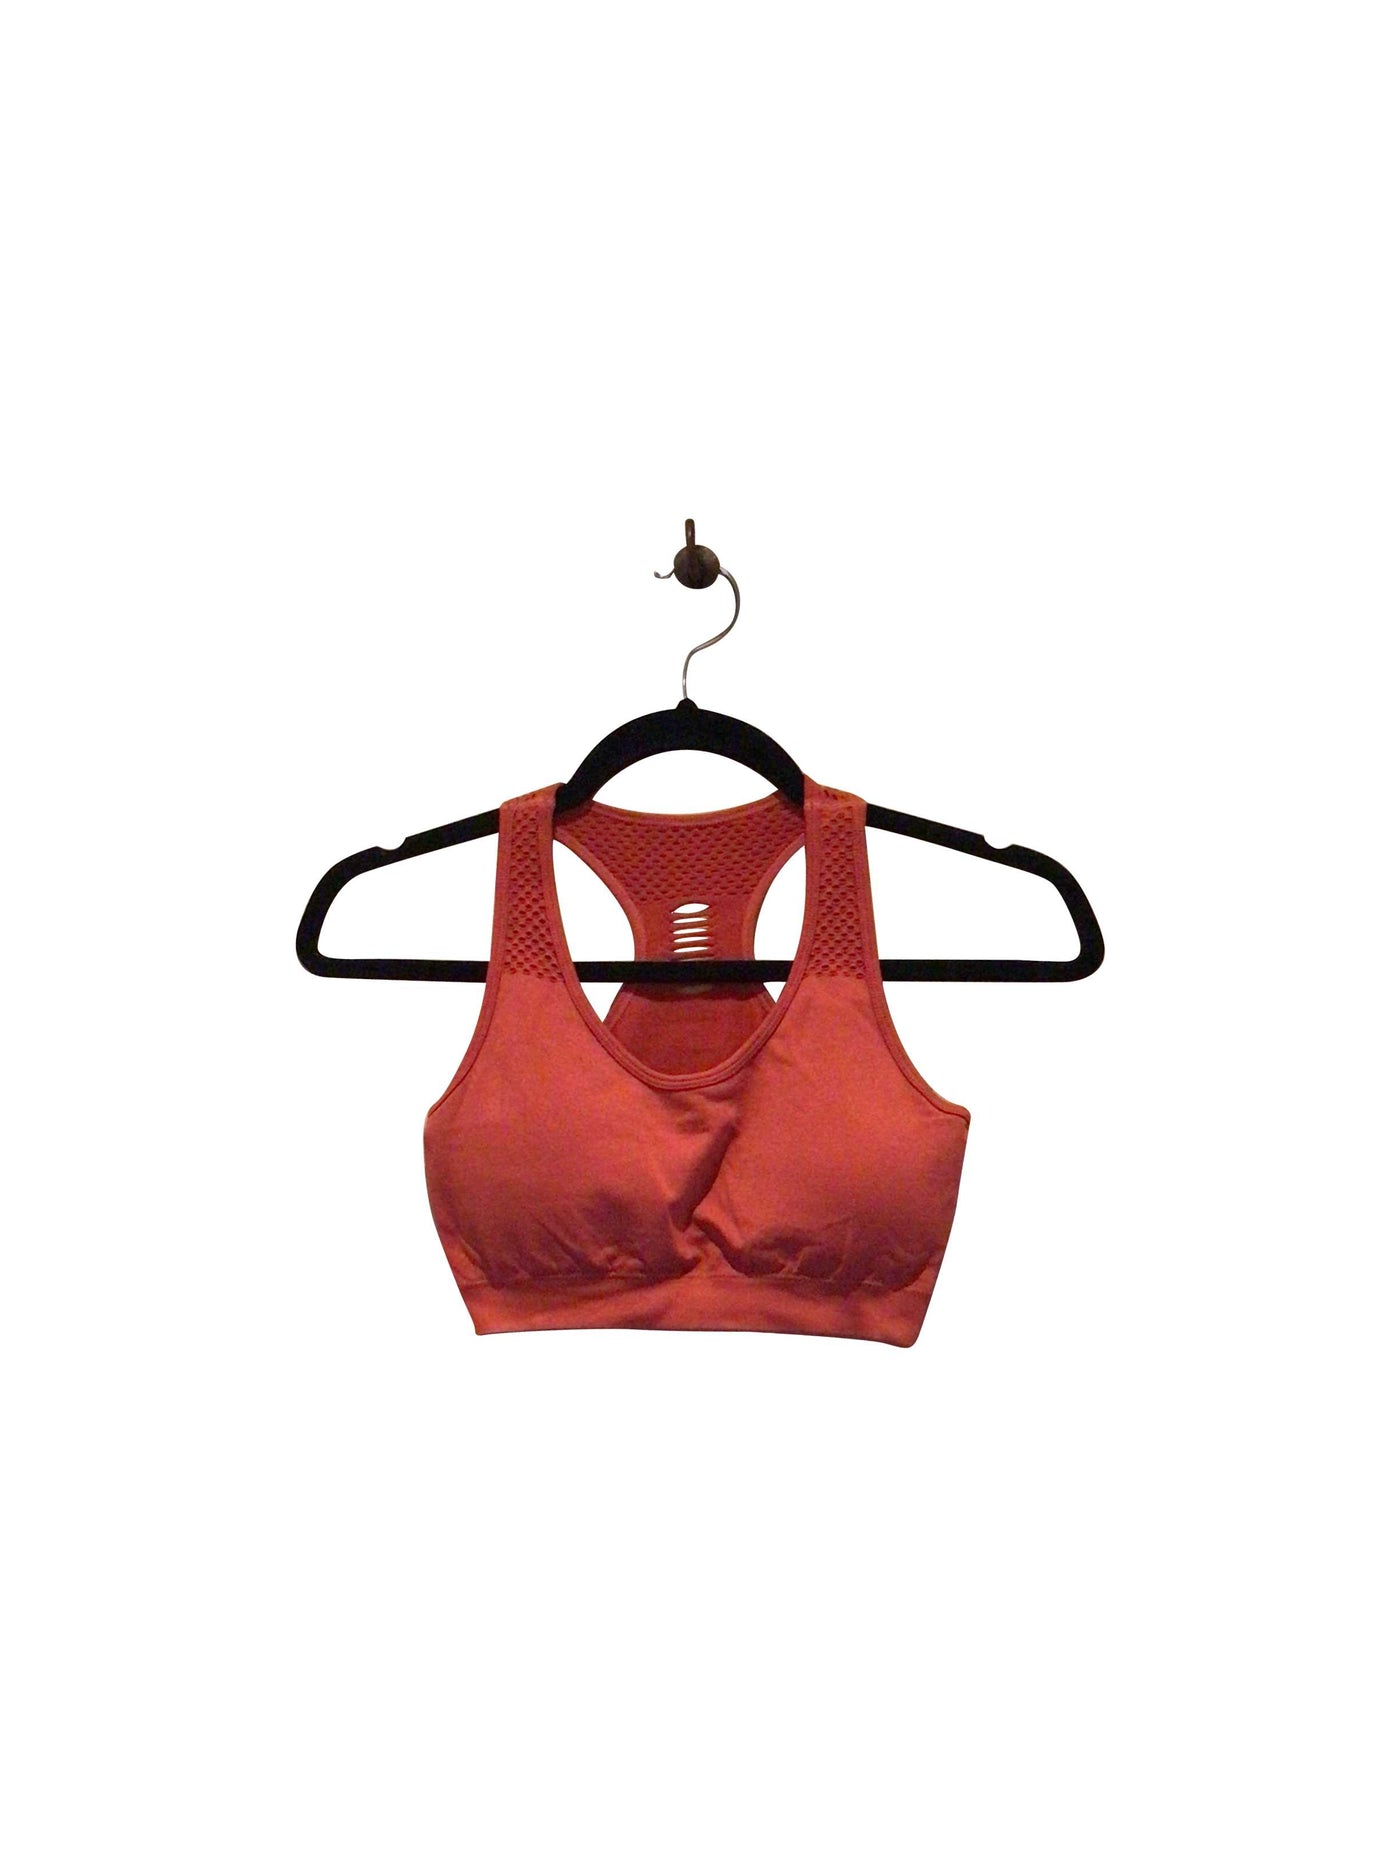 WALK POP Activewear Sport bra in Red  -  XS  13.25 Koop